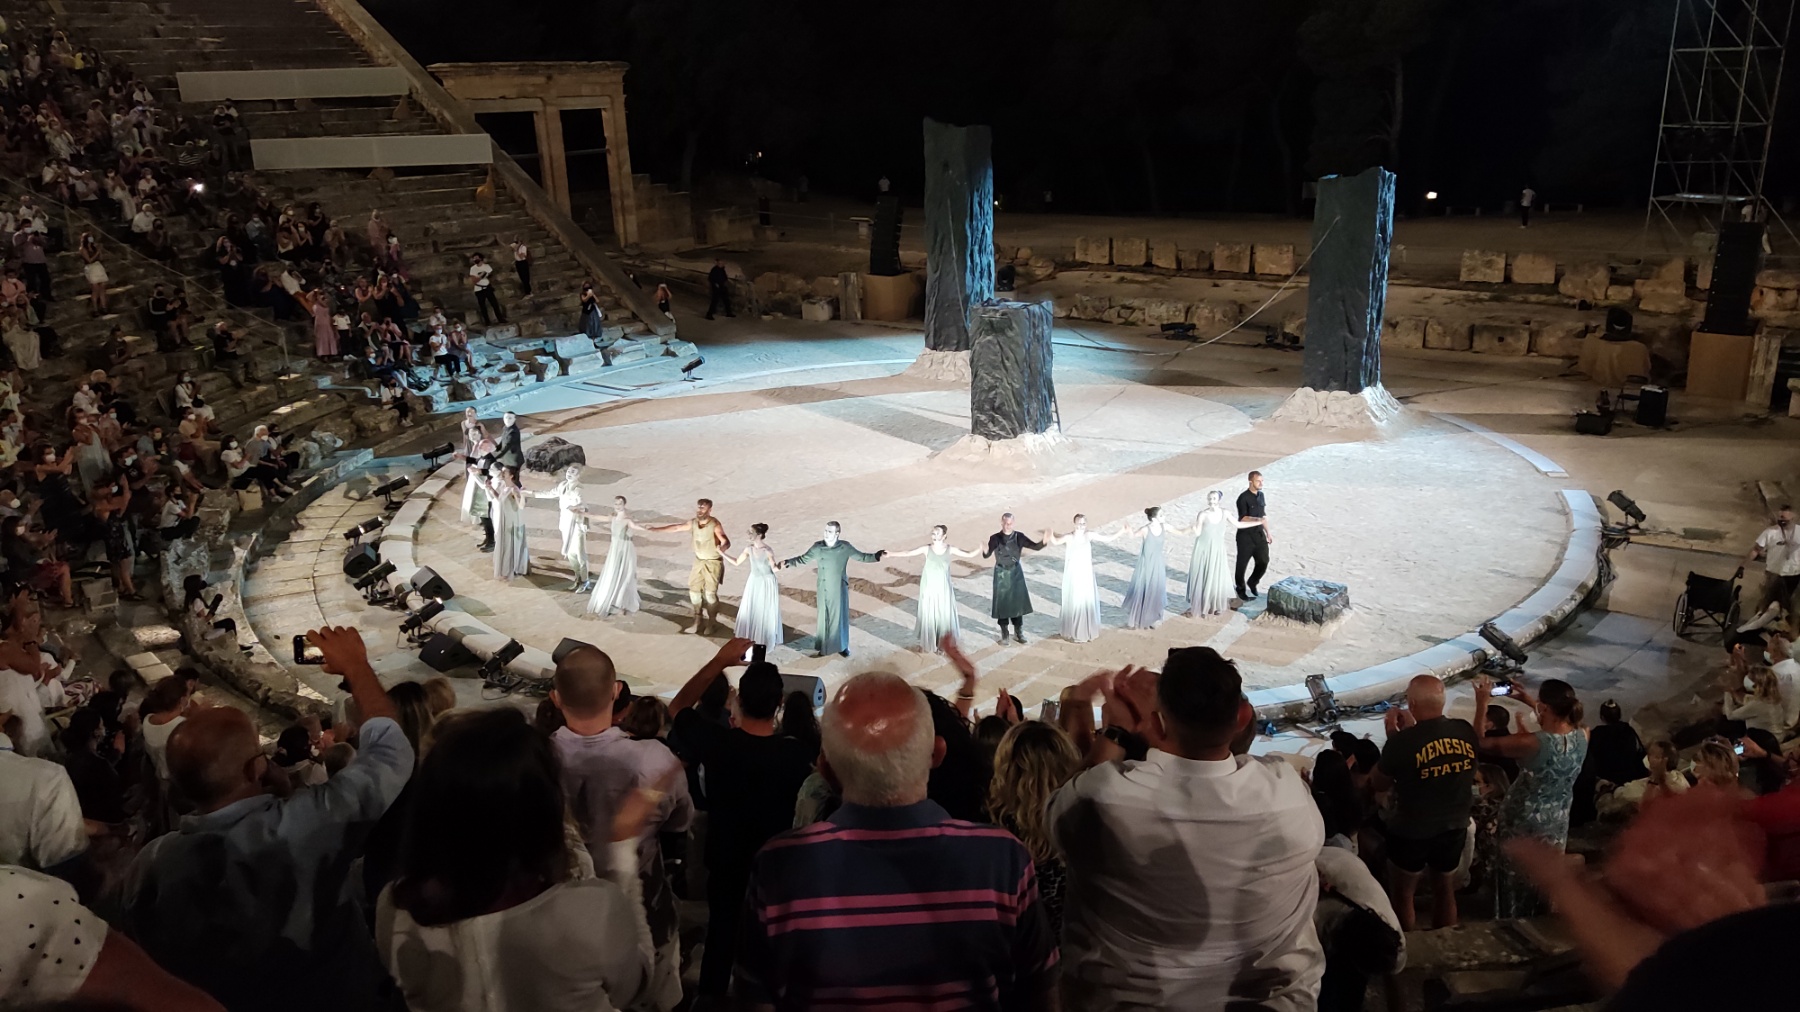 Αργολίδα: Ξεκινούν τα δρομολόγια του ΚΤΕΛ για το Αρχαίο Θέατρο Επιδαύρου